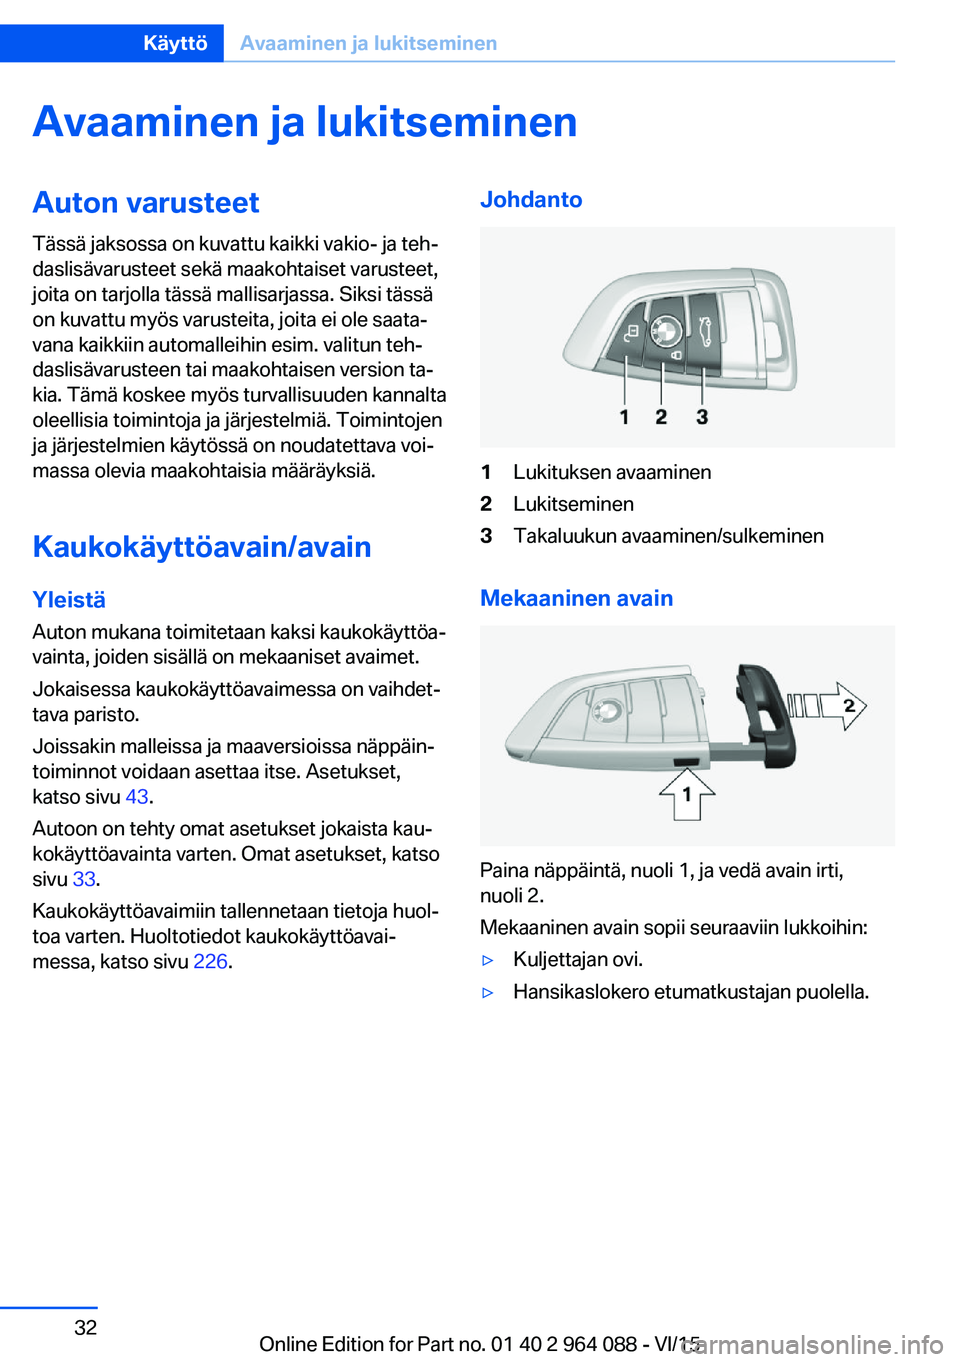 BMW X5 M 2016  Omistajan Käsikirja (in Finnish) Avaaminen ja lukitseminenAuton varusteetTässä jaksossa on kuvattu kaikki vakio- ja teh‐
daslisävarusteet sekä maakohtaiset varusteet,
joita on tarjolla tässä mallisarjassa. Siksi tässä
on ku